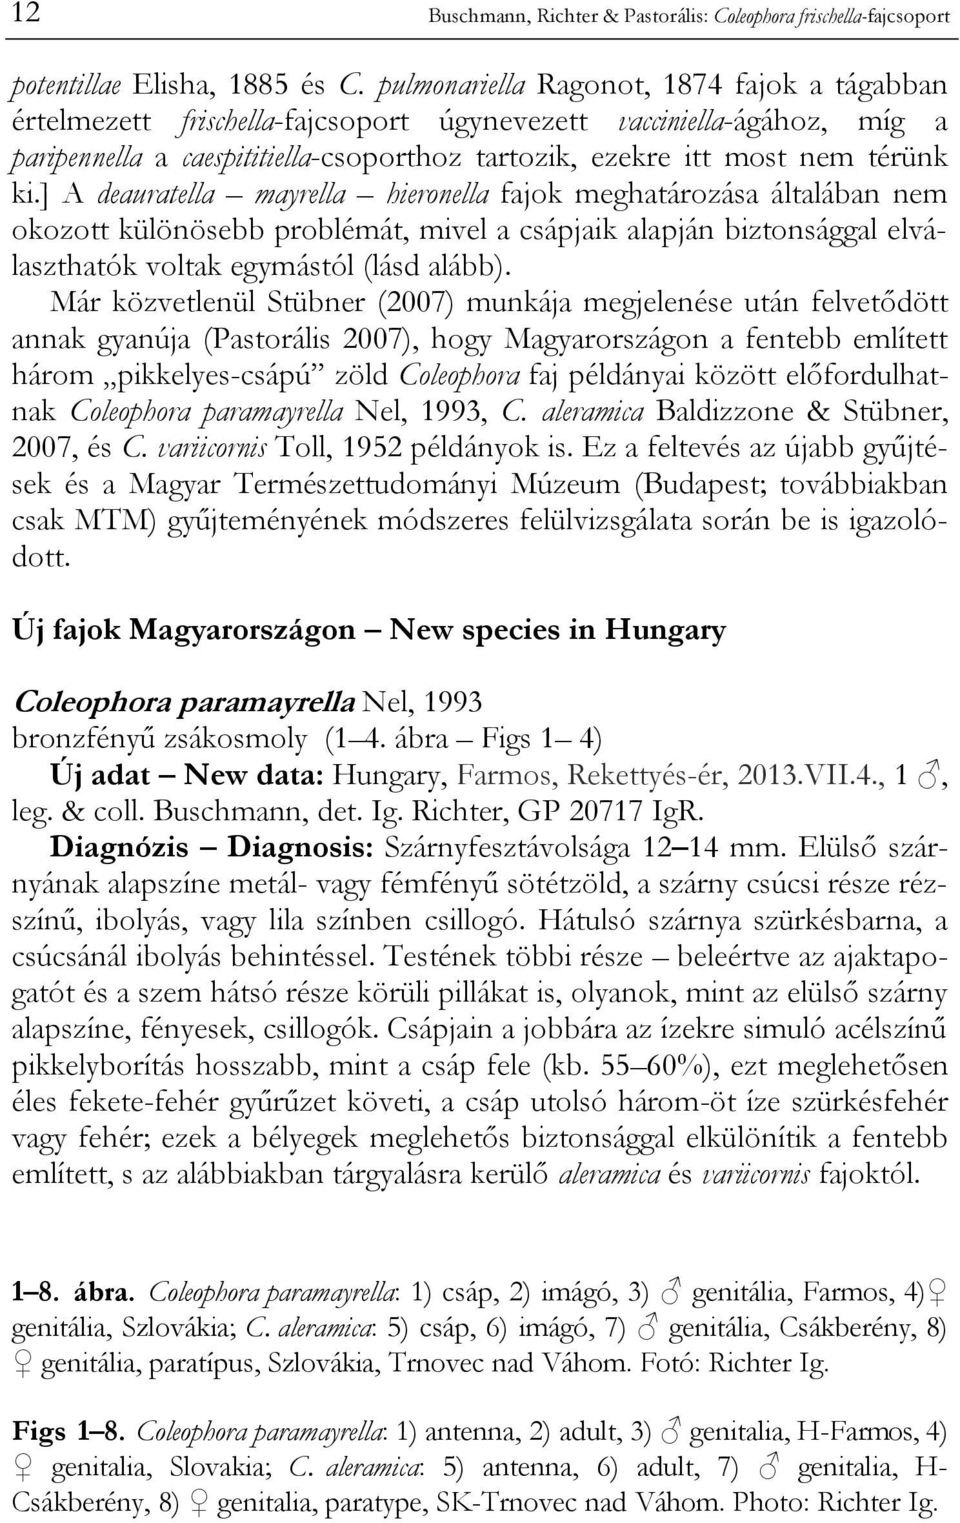 ] A deauratella mayrella hieronella fajok meghatározása általában nem okozott különösebb problémát, mivel a csápjaik alapján biztonsággal elválaszthatók voltak egymástól (lásd alább).